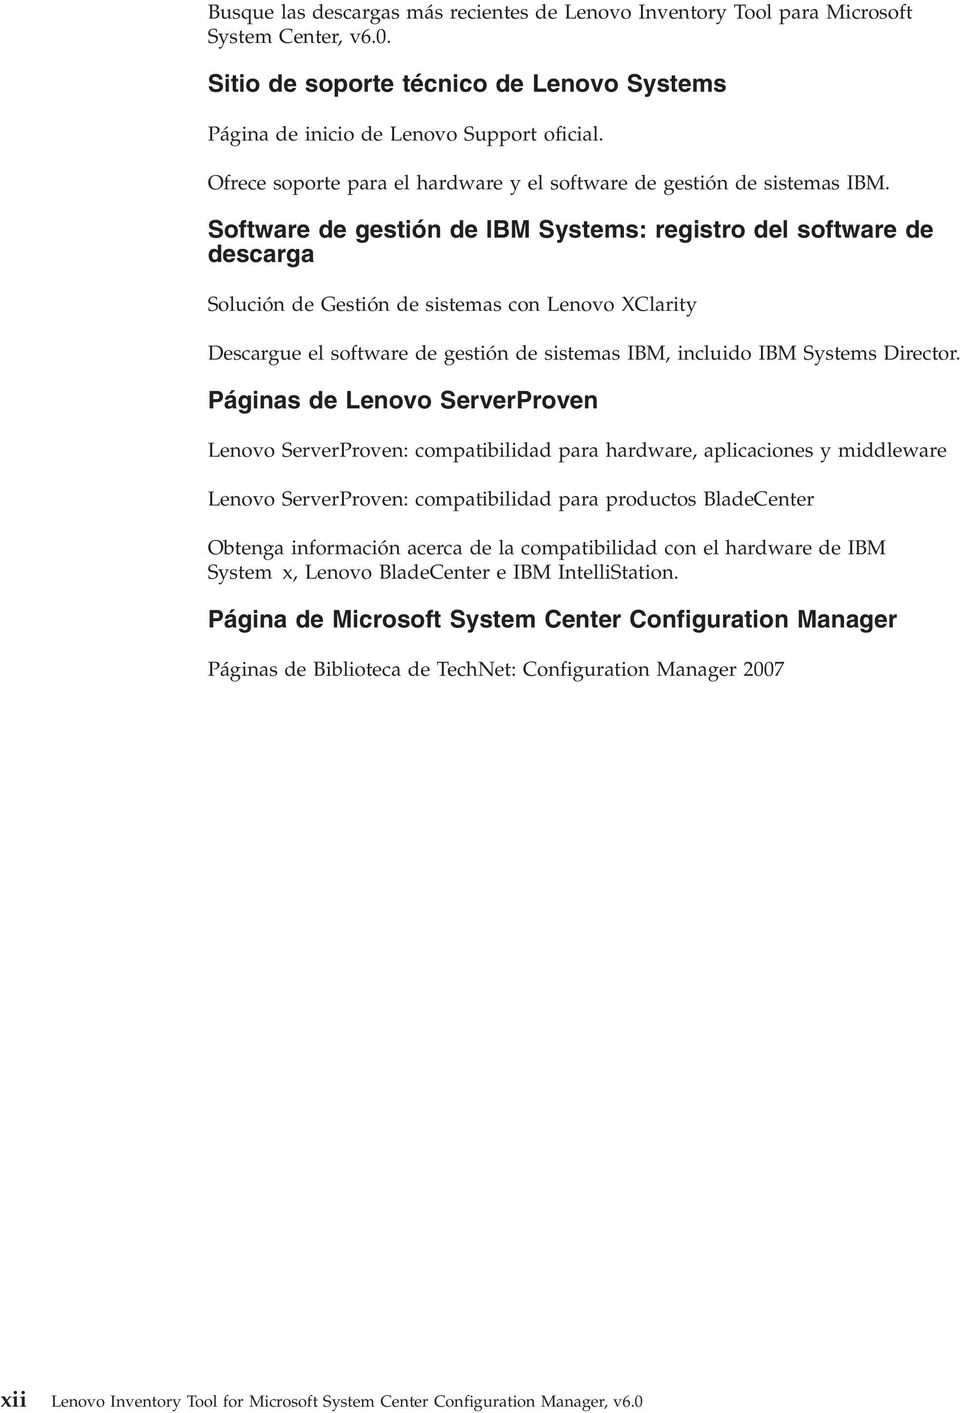 Software de gestión de IBM Systems: registro del software de descarga Solución de Gestión de sistemas con Lenovo XClarity Descargue el software de gestión de sistemas IBM, incluido IBM Systems